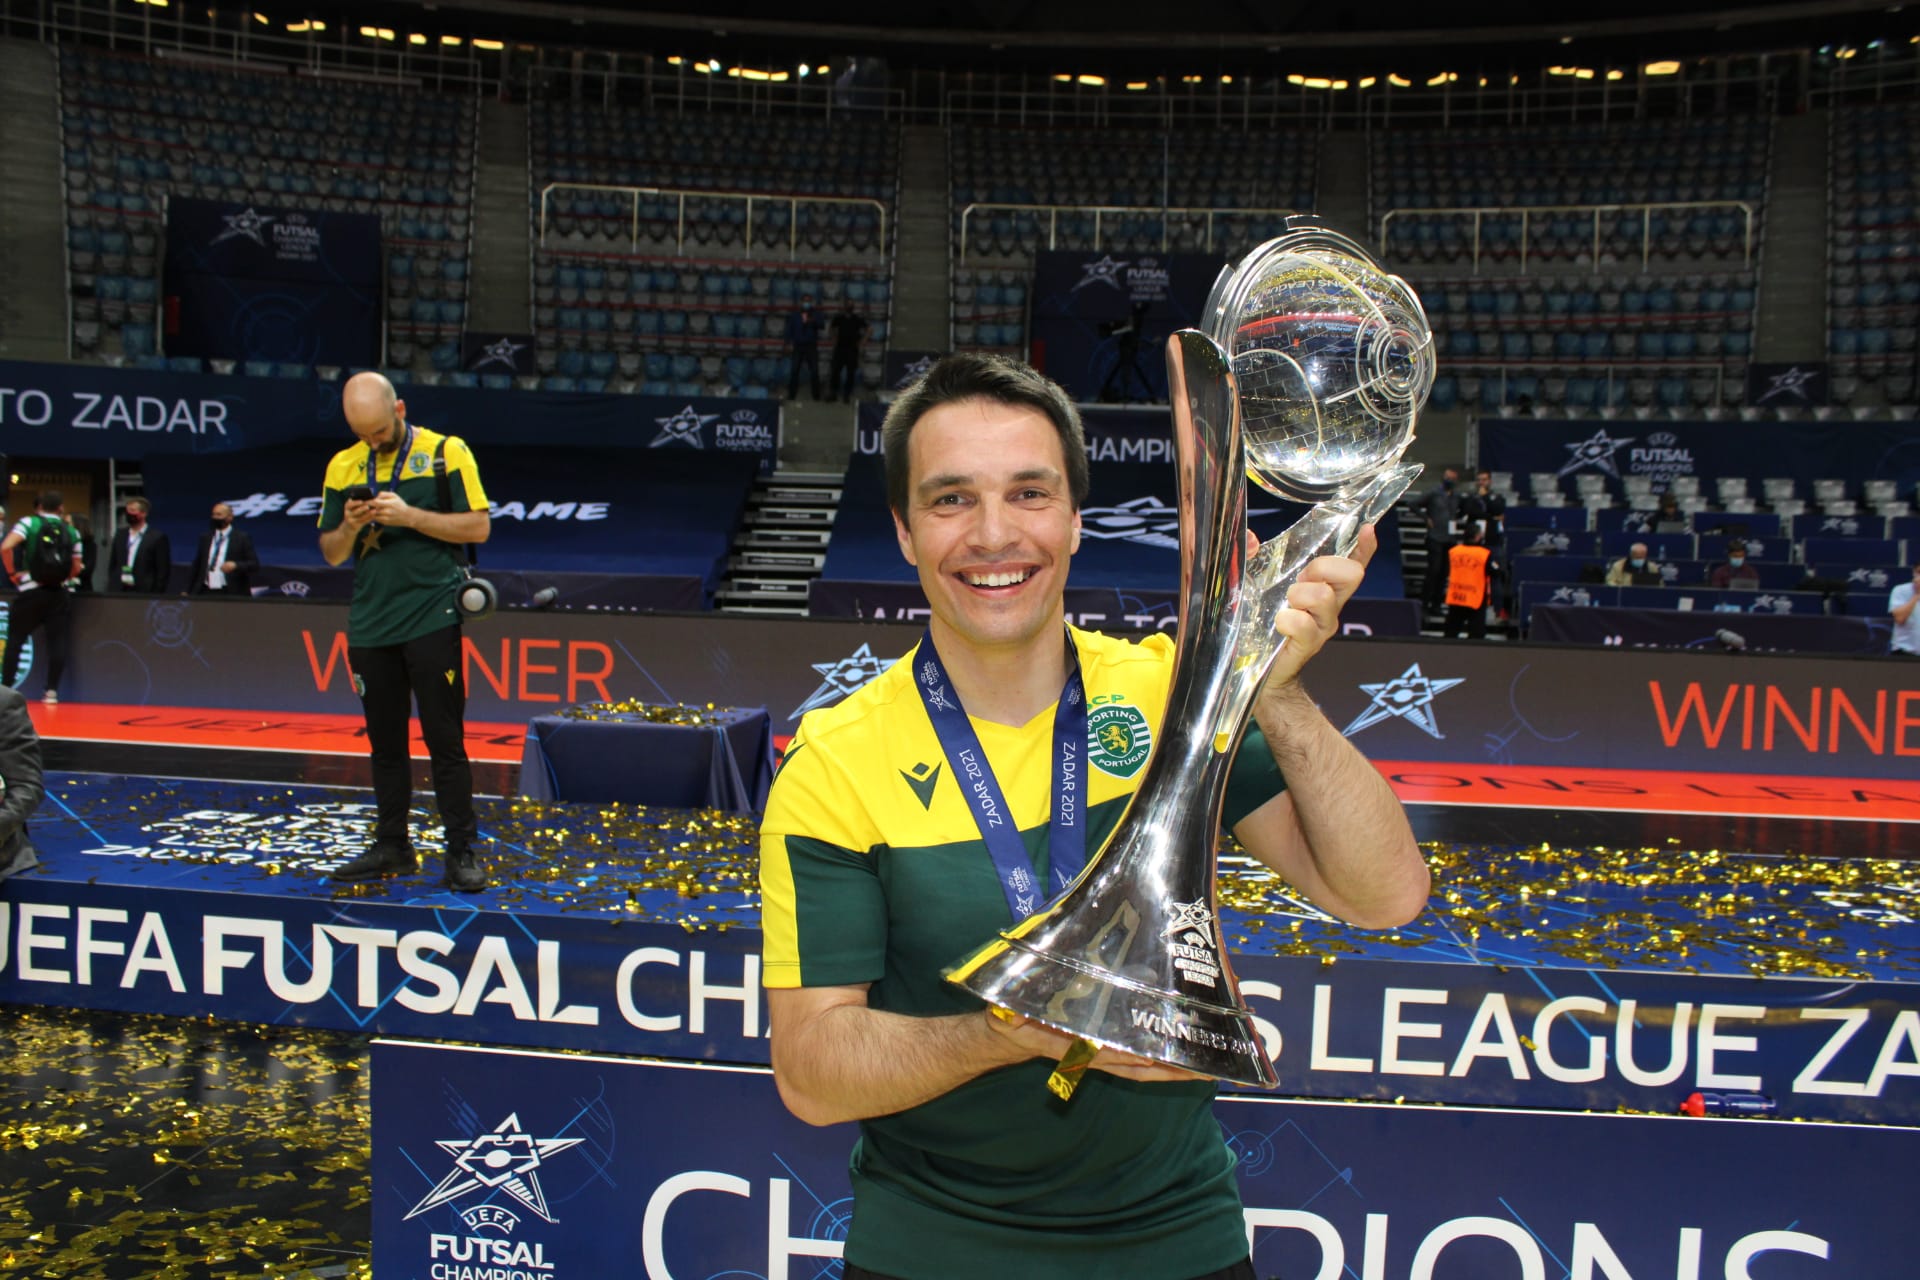 Obidense Filipe Rodrigues é Campeão Europeu de futsal pelo Sporting